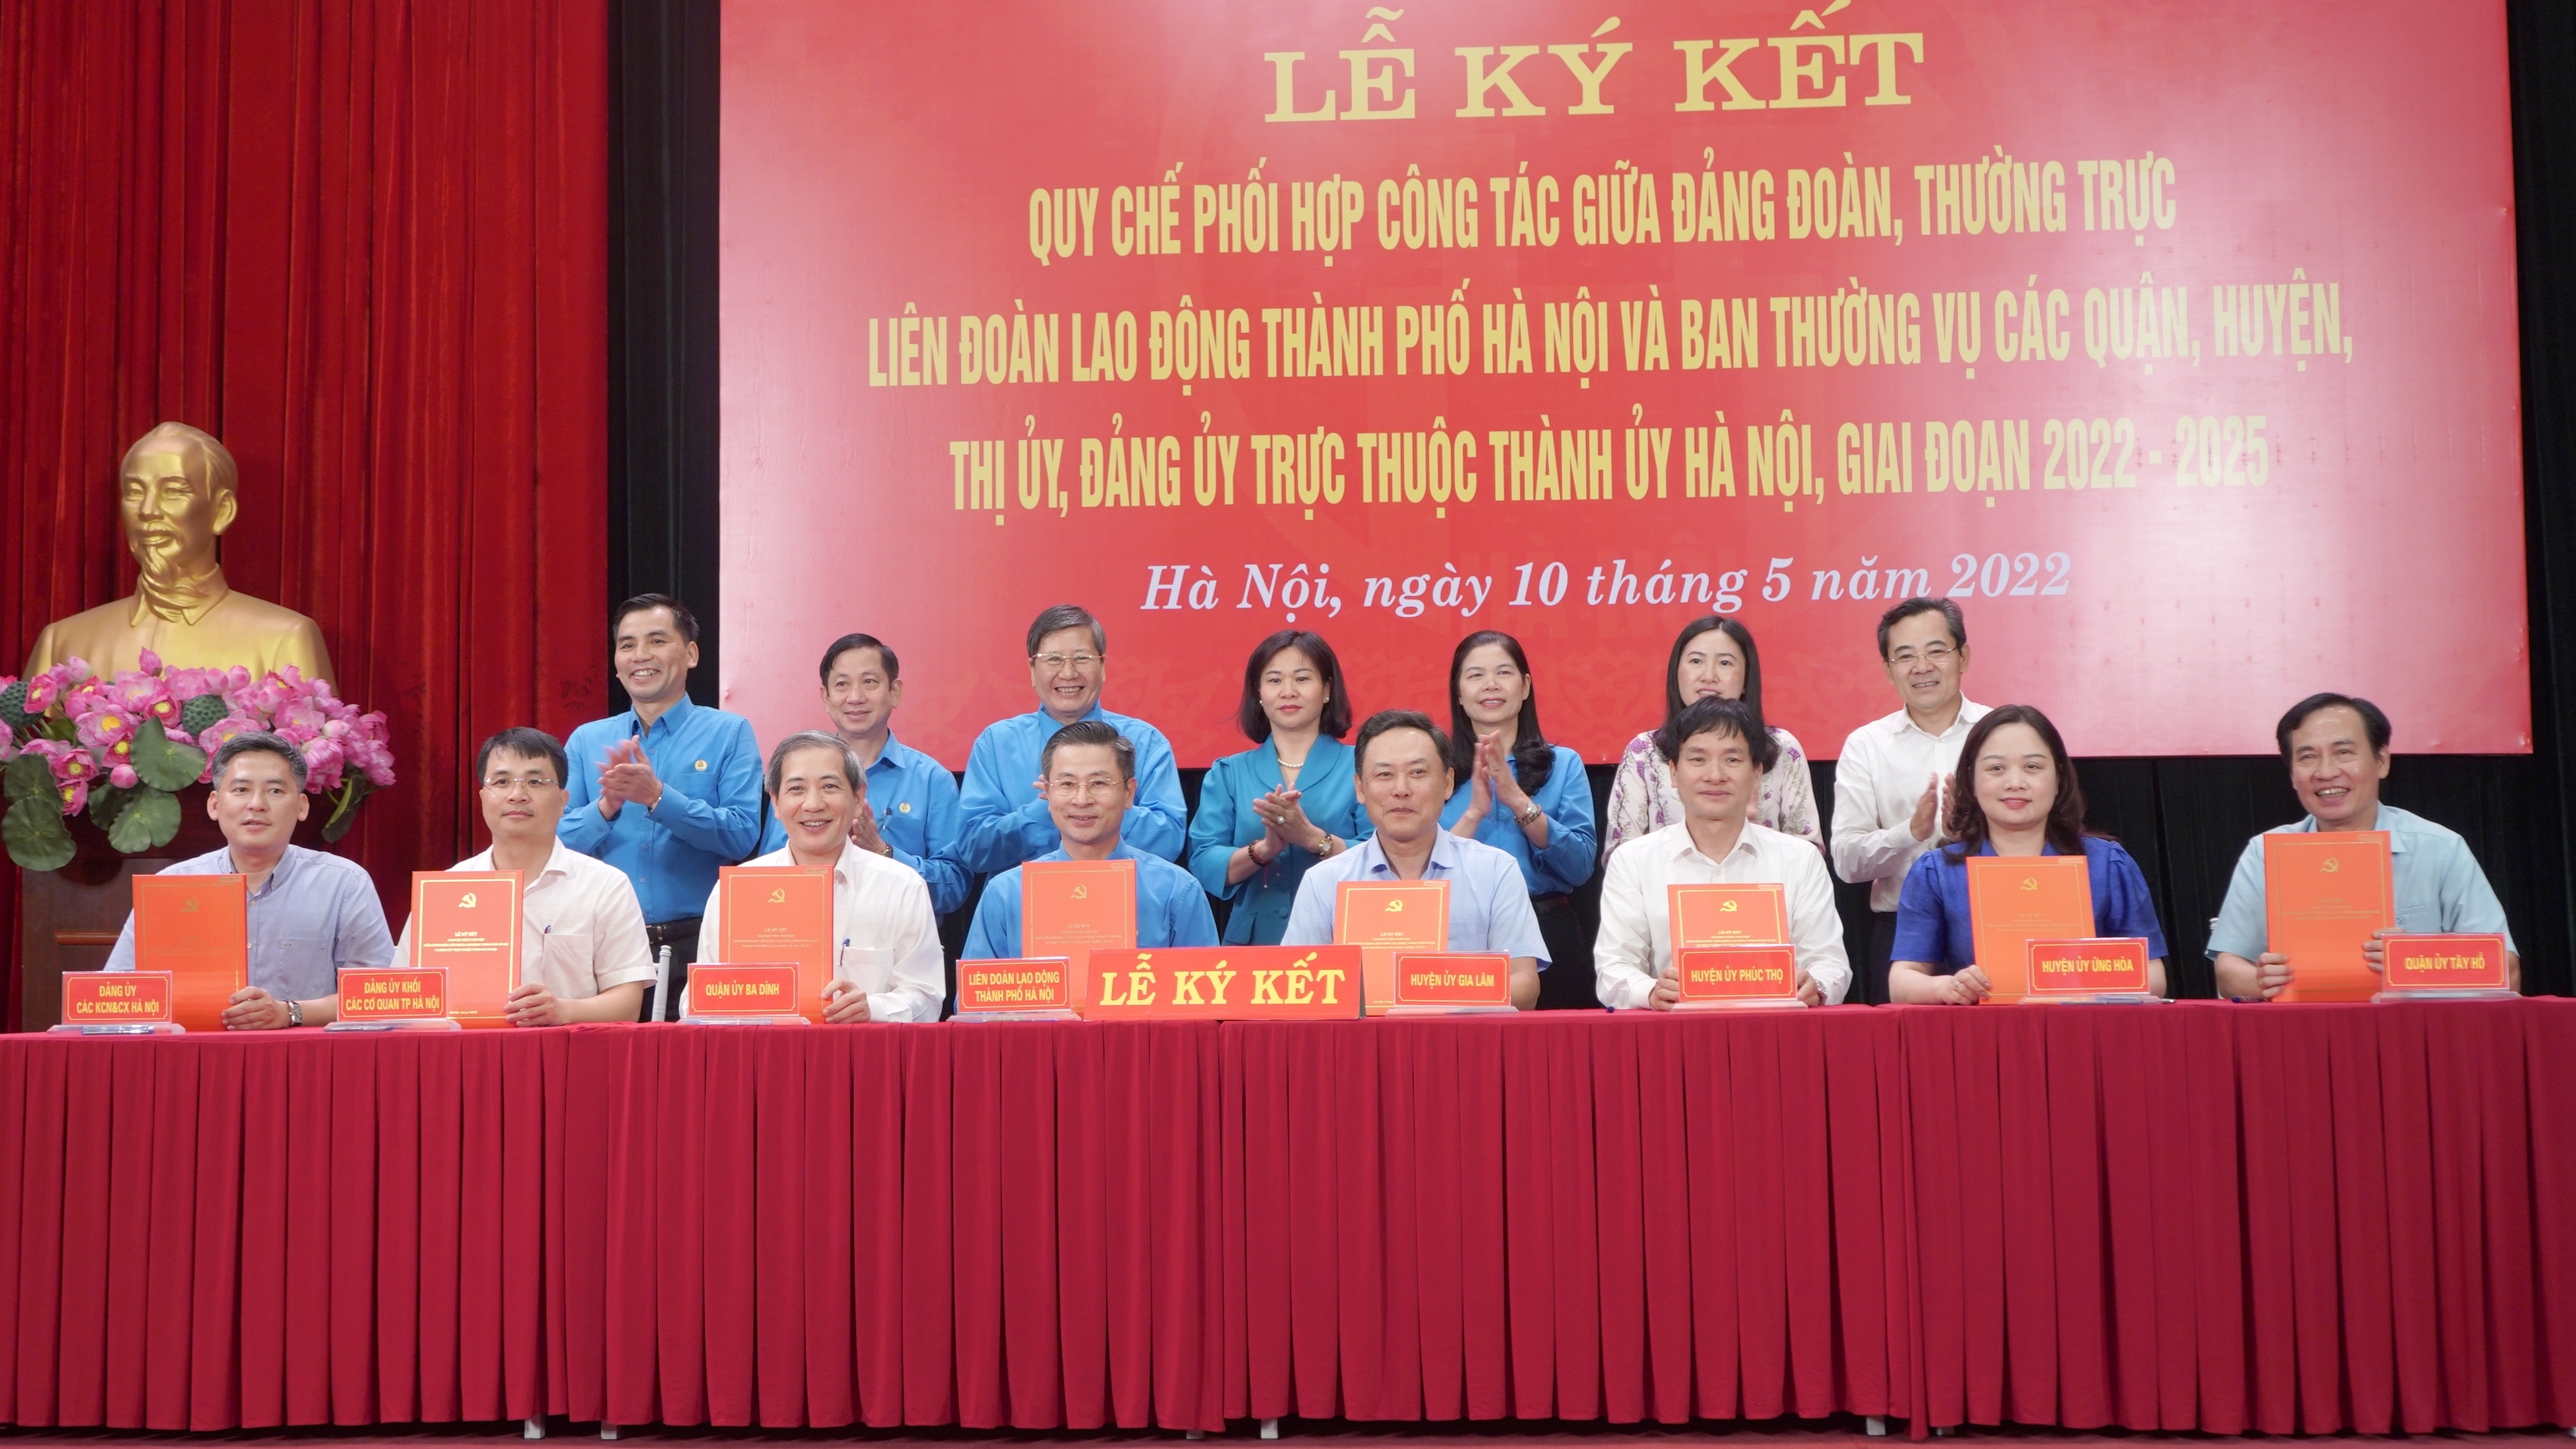 Đảng đoàn, Thường trực LĐLĐ Thành phố ký kết Quy chế phối hợp công tác với các Quận, Huyện, Thị ủy, Đảng ủy trực thuộc Thành ủy Hà Nội